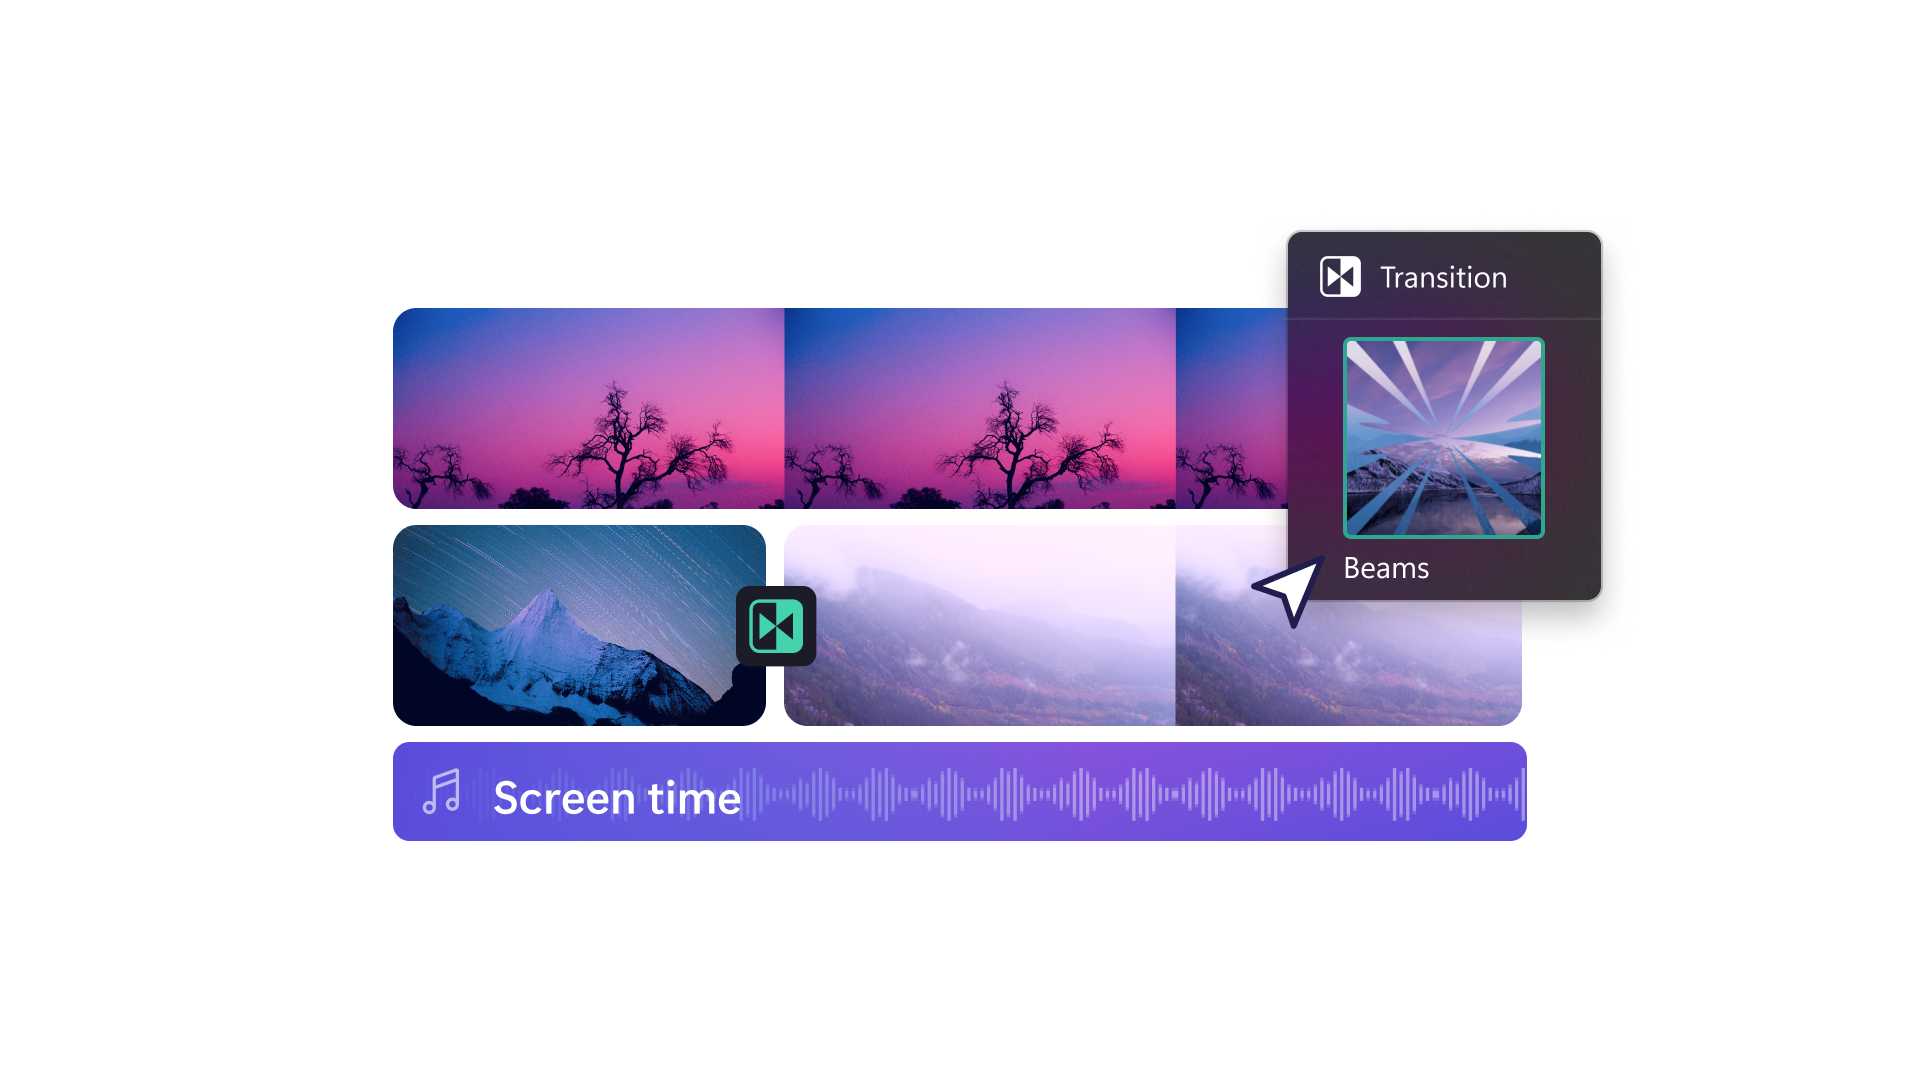 Image de différents fichiers multimédias en cours de montage dans Clipchamp, avec des vidéos sur la nature, de la musique et une transition